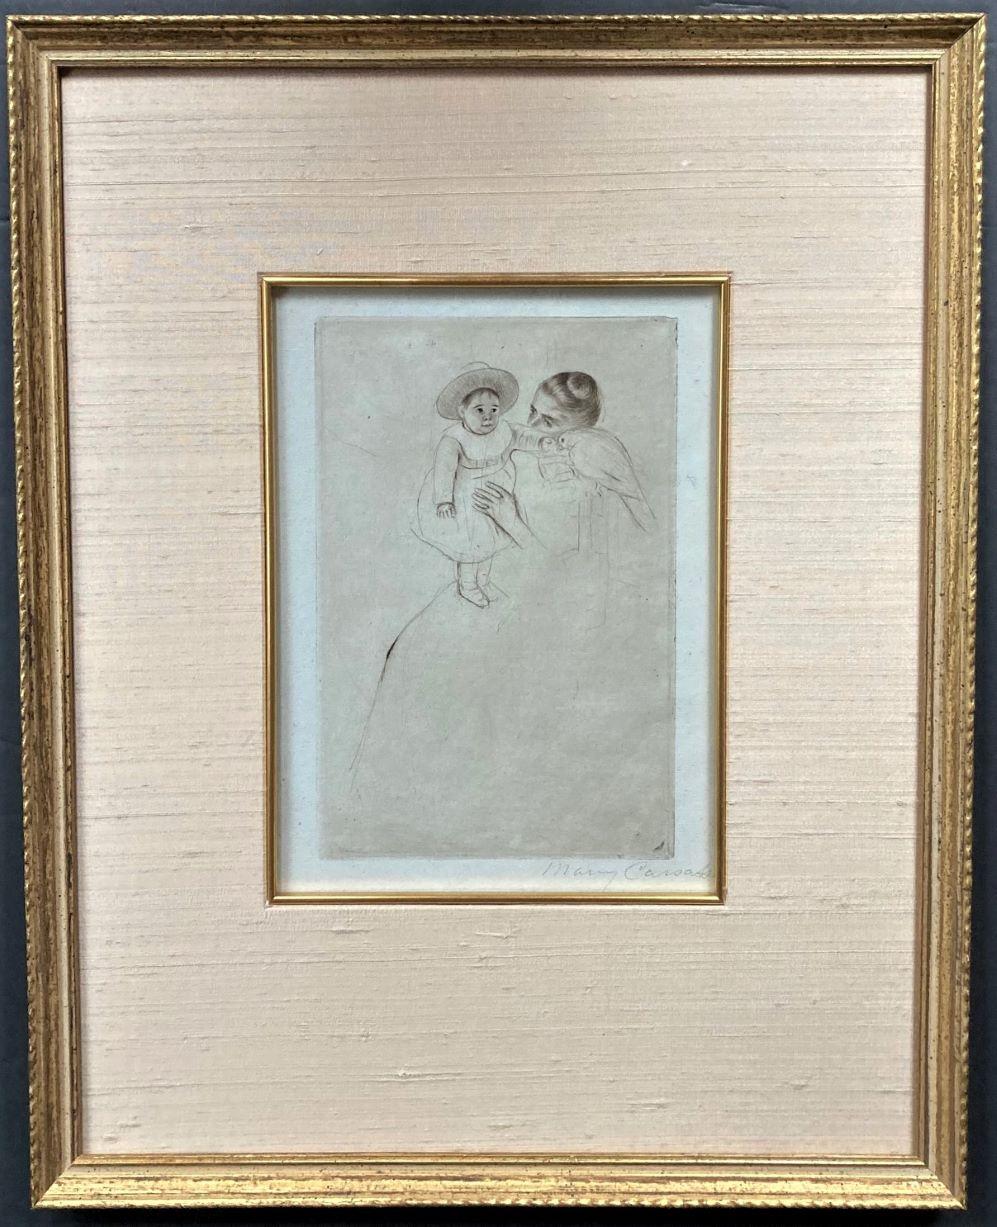 Hélène von Septeuil (enfant au perroquet) (Kind mit Sittich). ca. 1889-1890. Kaltnadelverfahren. Breeskin, 134.v. 9 3/8 x 6 1/4 (Blatt 15 3/4 x 9 7/8). Ein reicher Abdruck mit Grat und Plattenton. Gedruckt auf antikem blaugrünem Büttenpapier mit